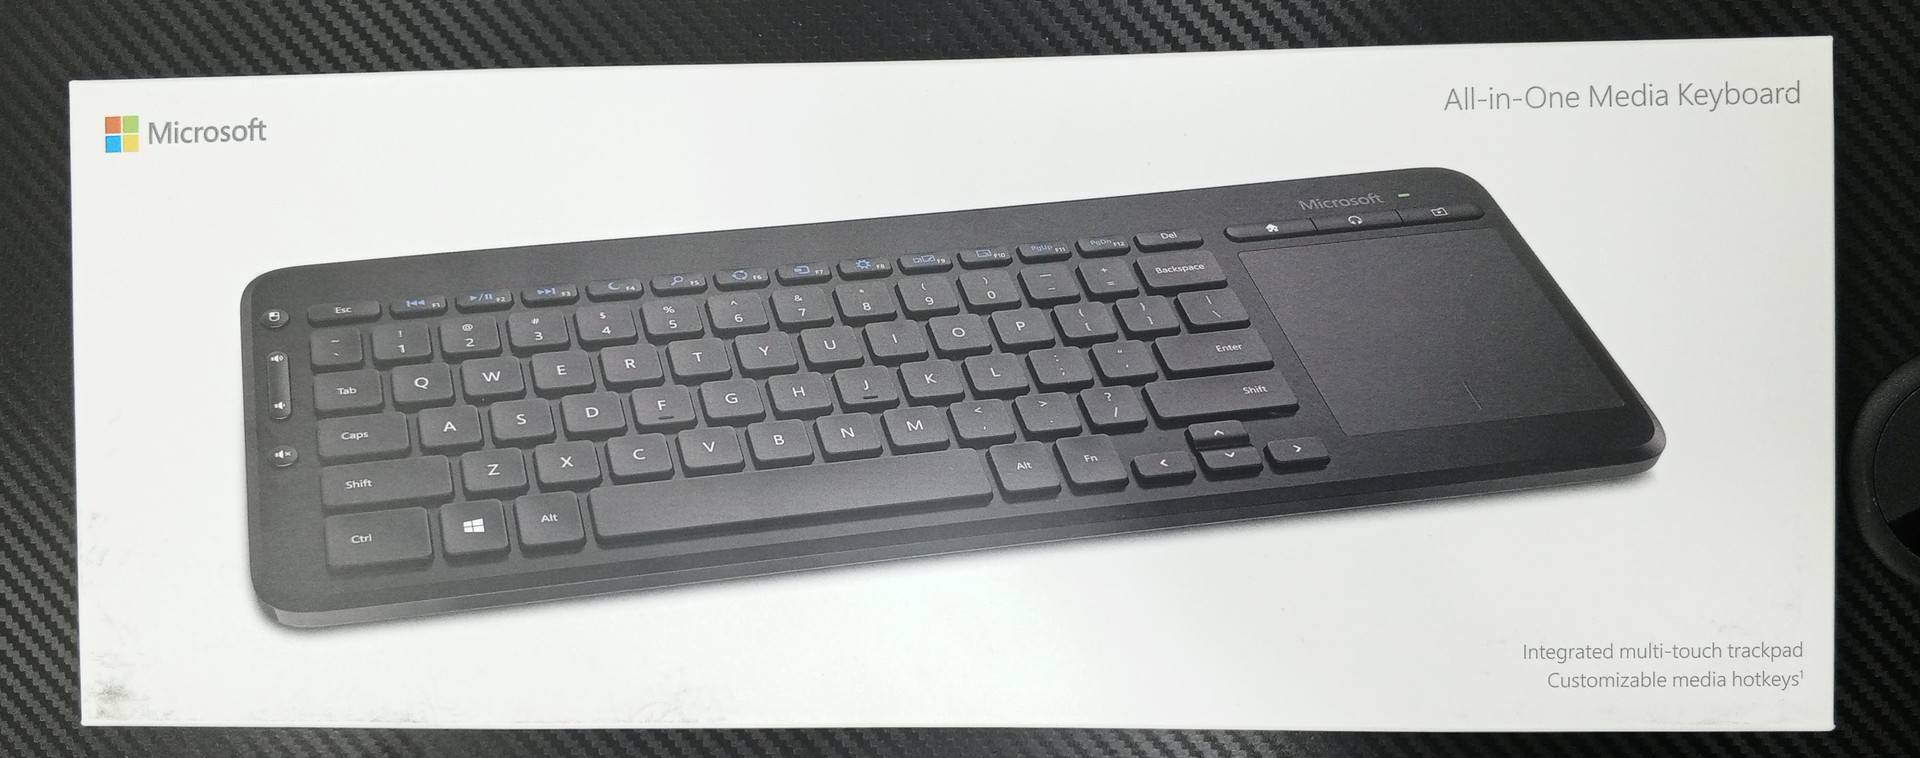 computadoras y laptops - Teclado Microsoft All-in-One Media Keyboard 0